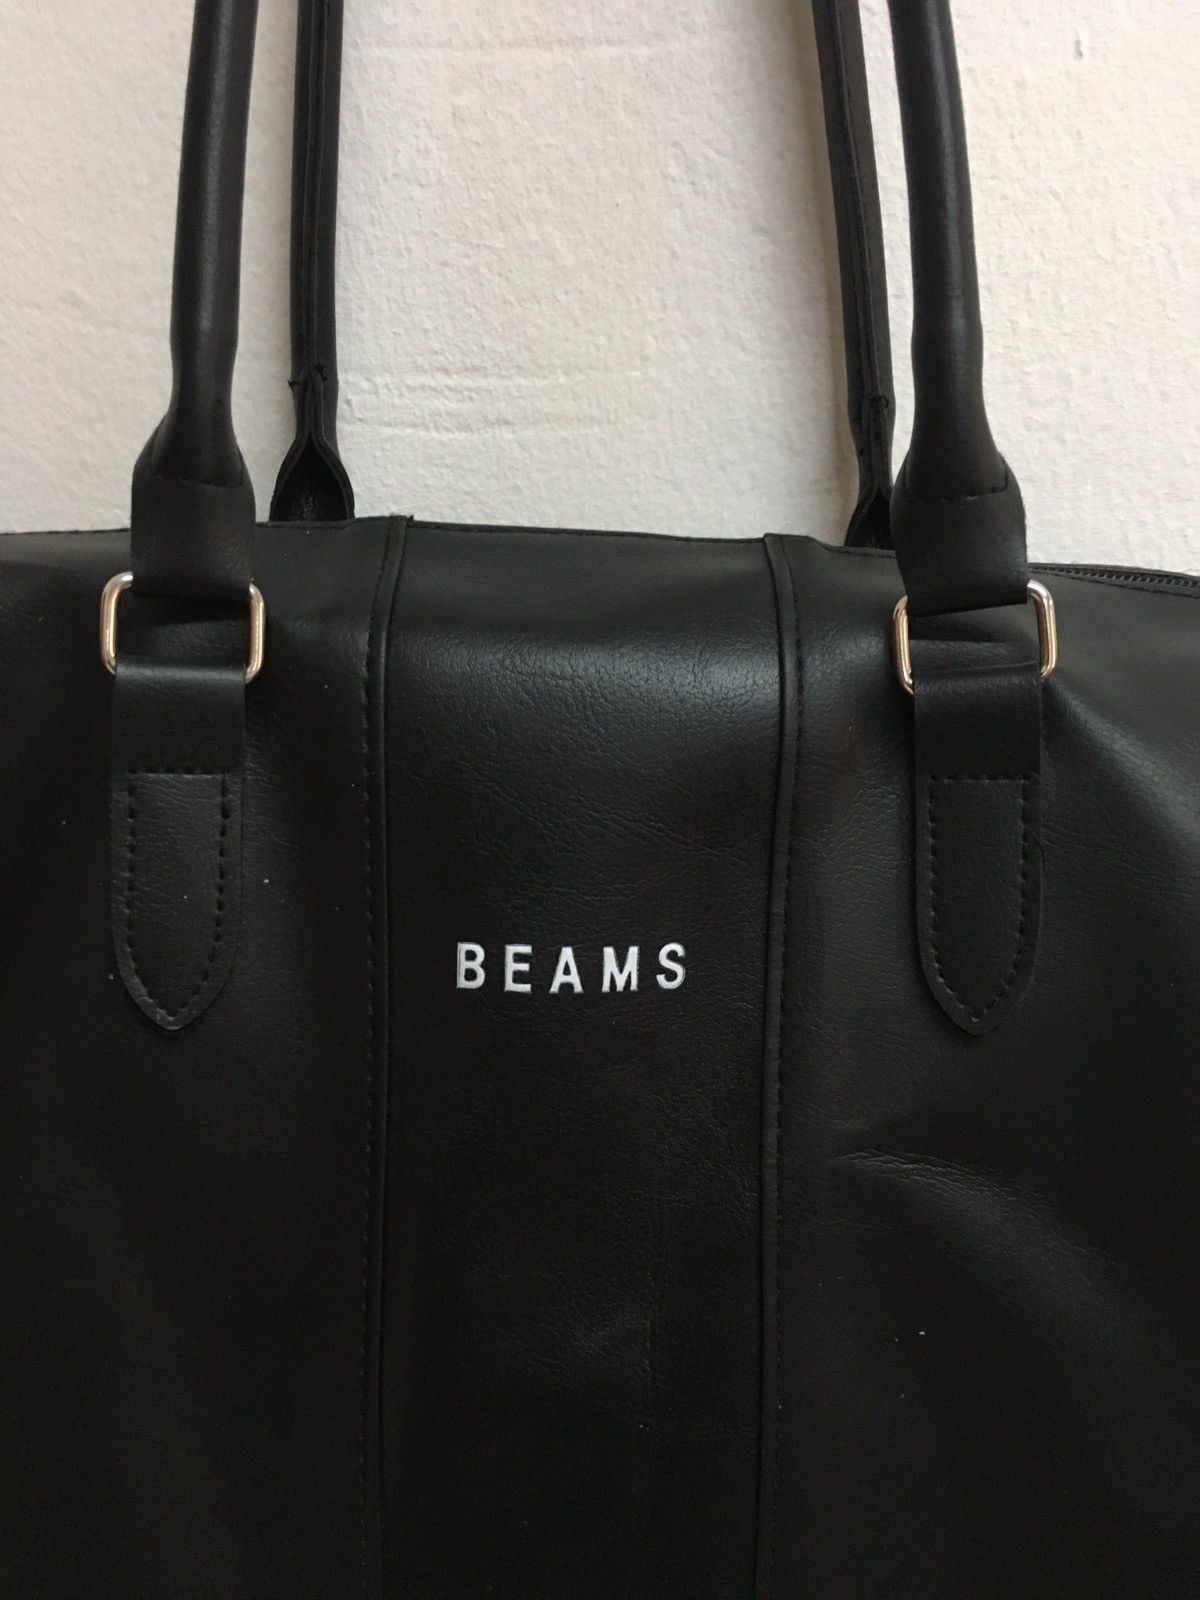 Men's Beams Plus Bags & Luggage | Grailed